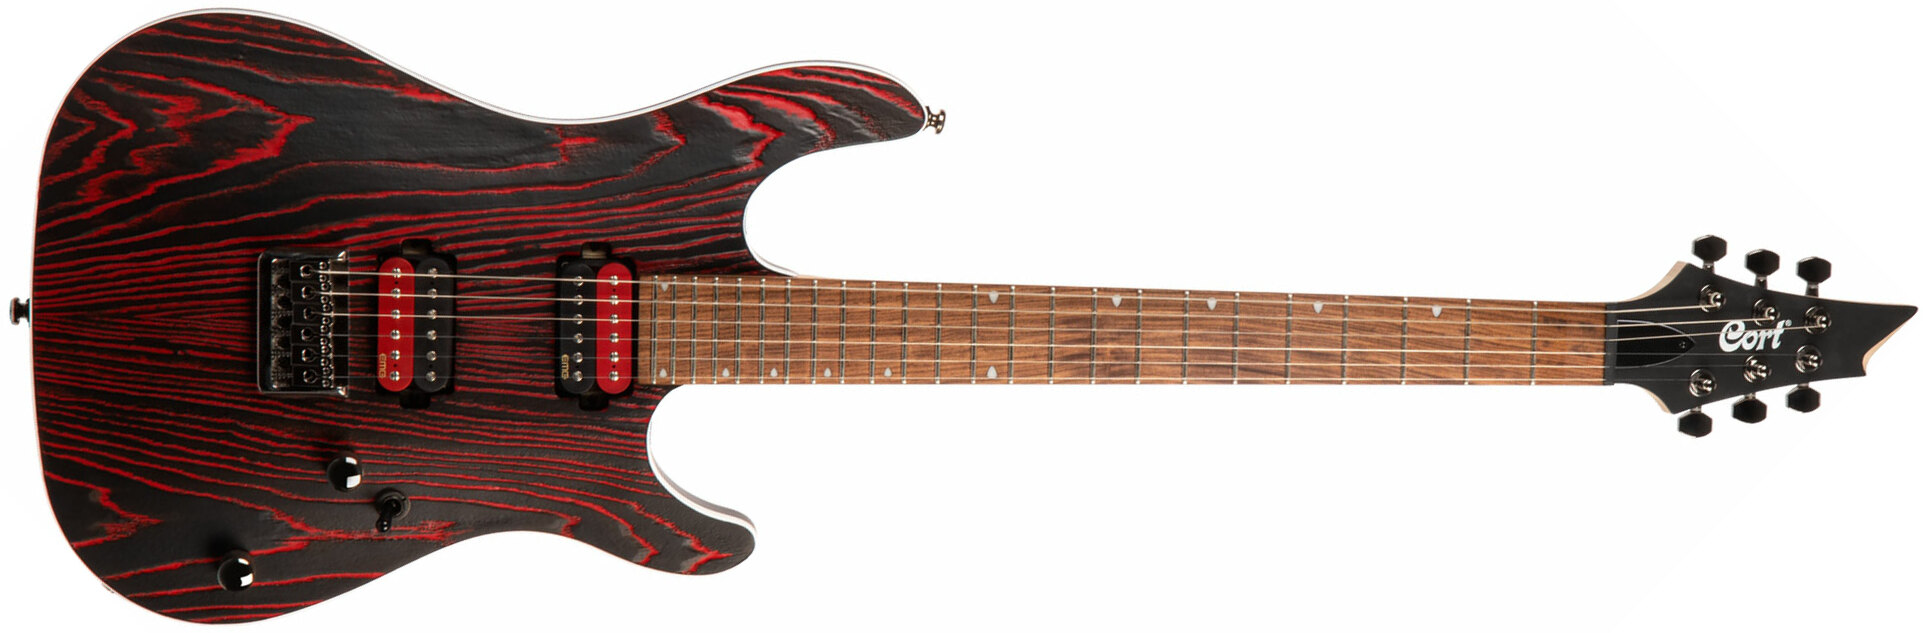 Cort Kx300 Ebr Hh Emg Ht Jat - Etched Black Red - Elektrische gitaar in Str-vorm - Main picture